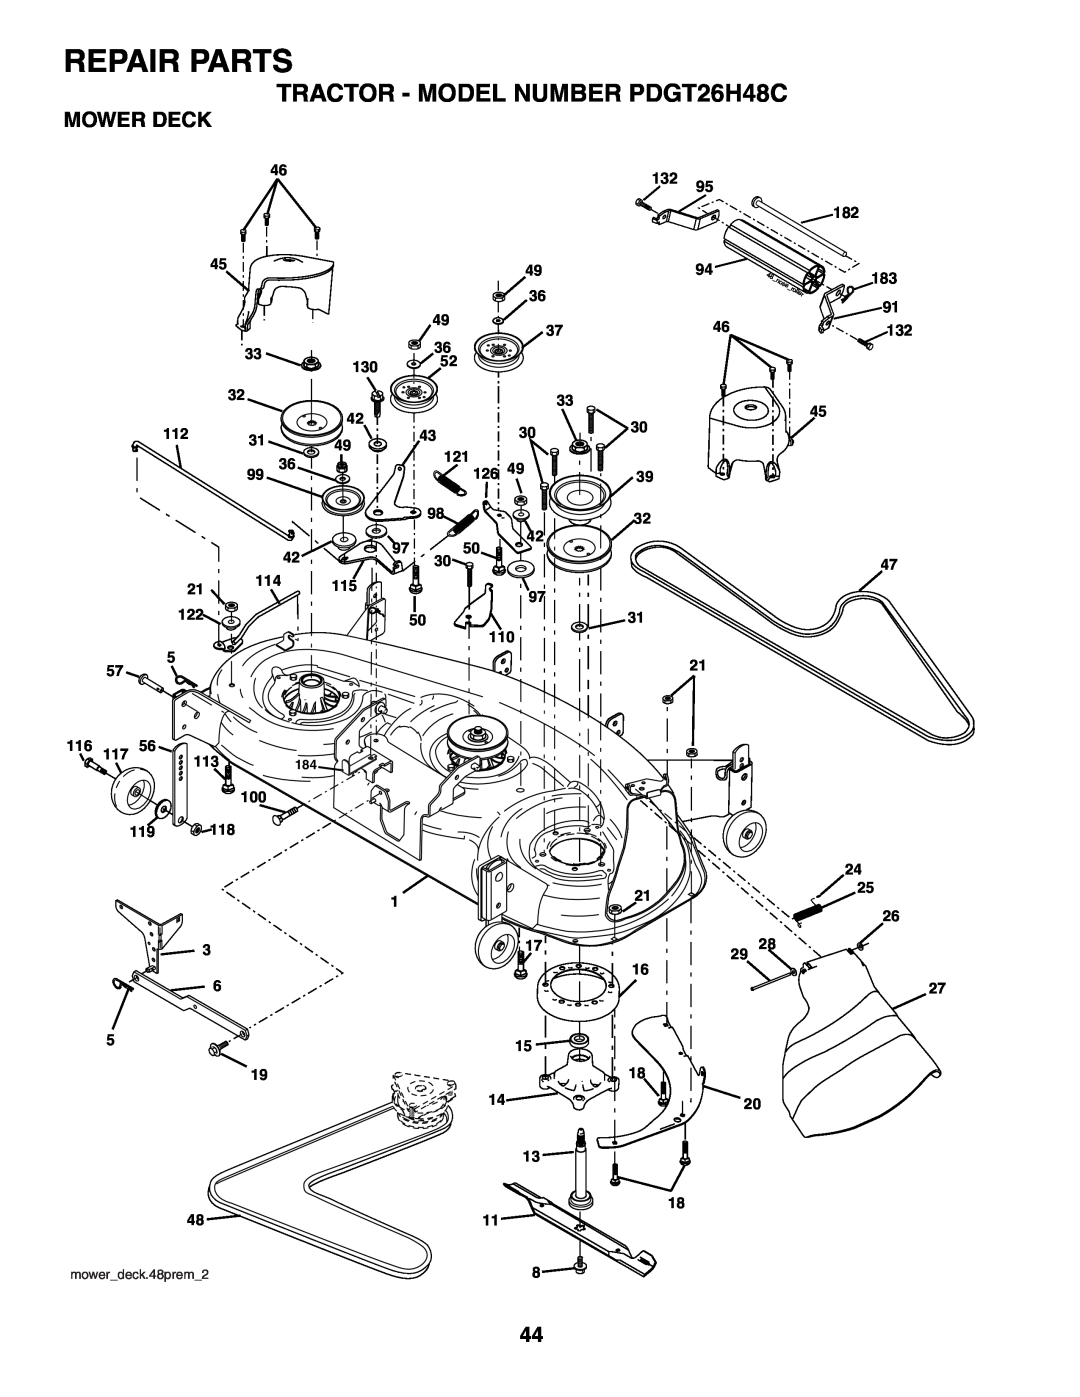 Poulan owner manual Mower Deck, Repair Parts, TRACTOR - MODEL NUMBER PDGT26H48C, mowerdeck.48prem2 